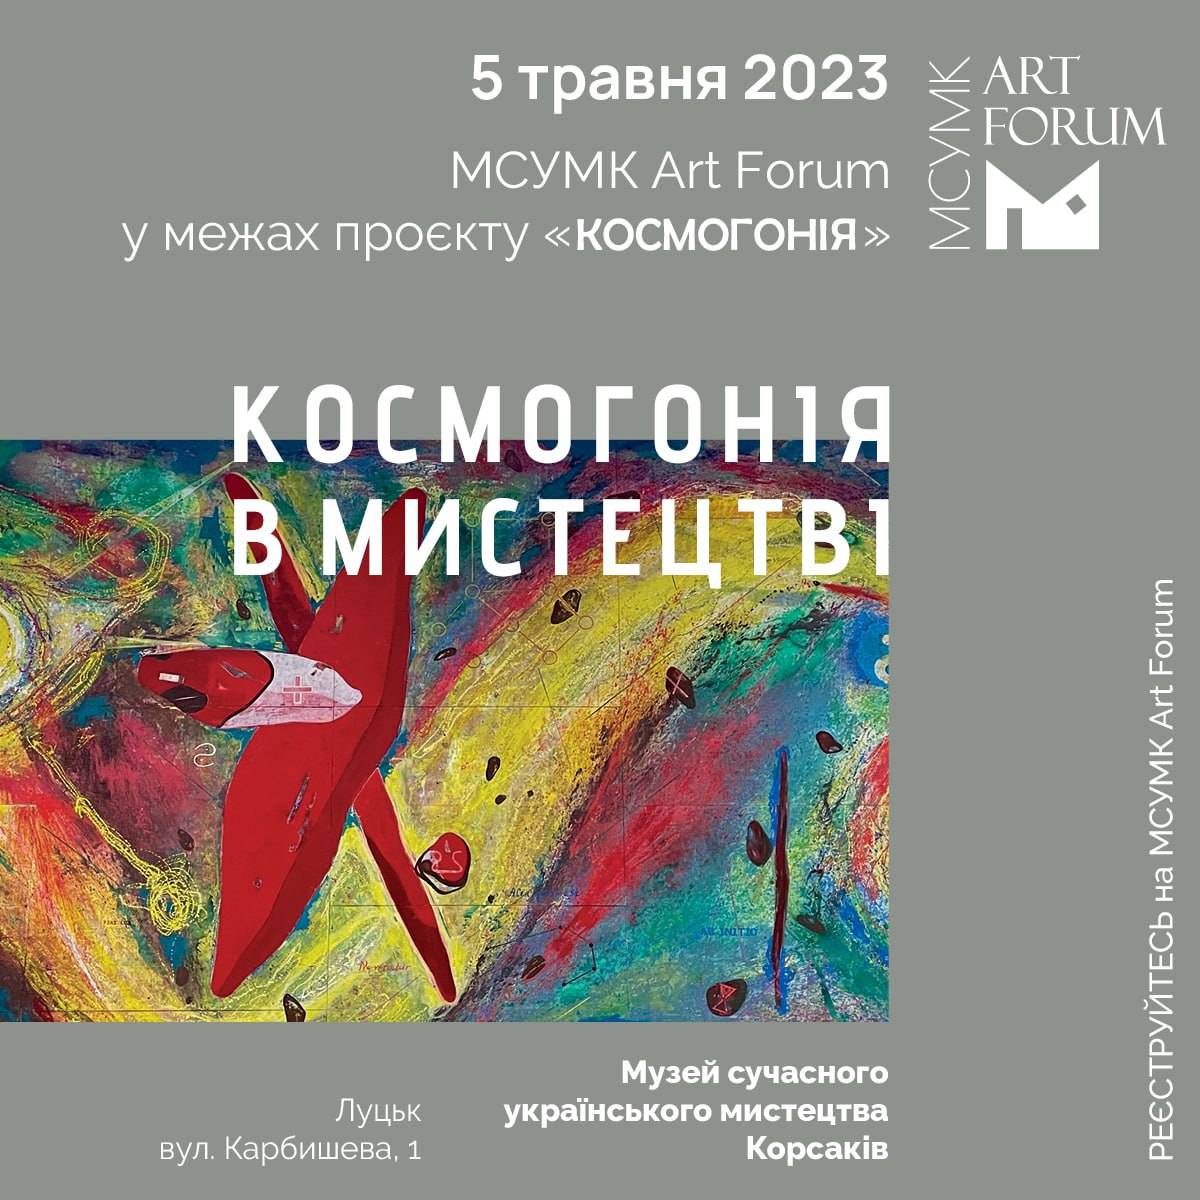 5 травня о 10:00 запрошуємо у Музей Корсаків на міжнародний офлайн-форум МСУМК Art Forum із головною темою: «Космогонія в мистецтві»